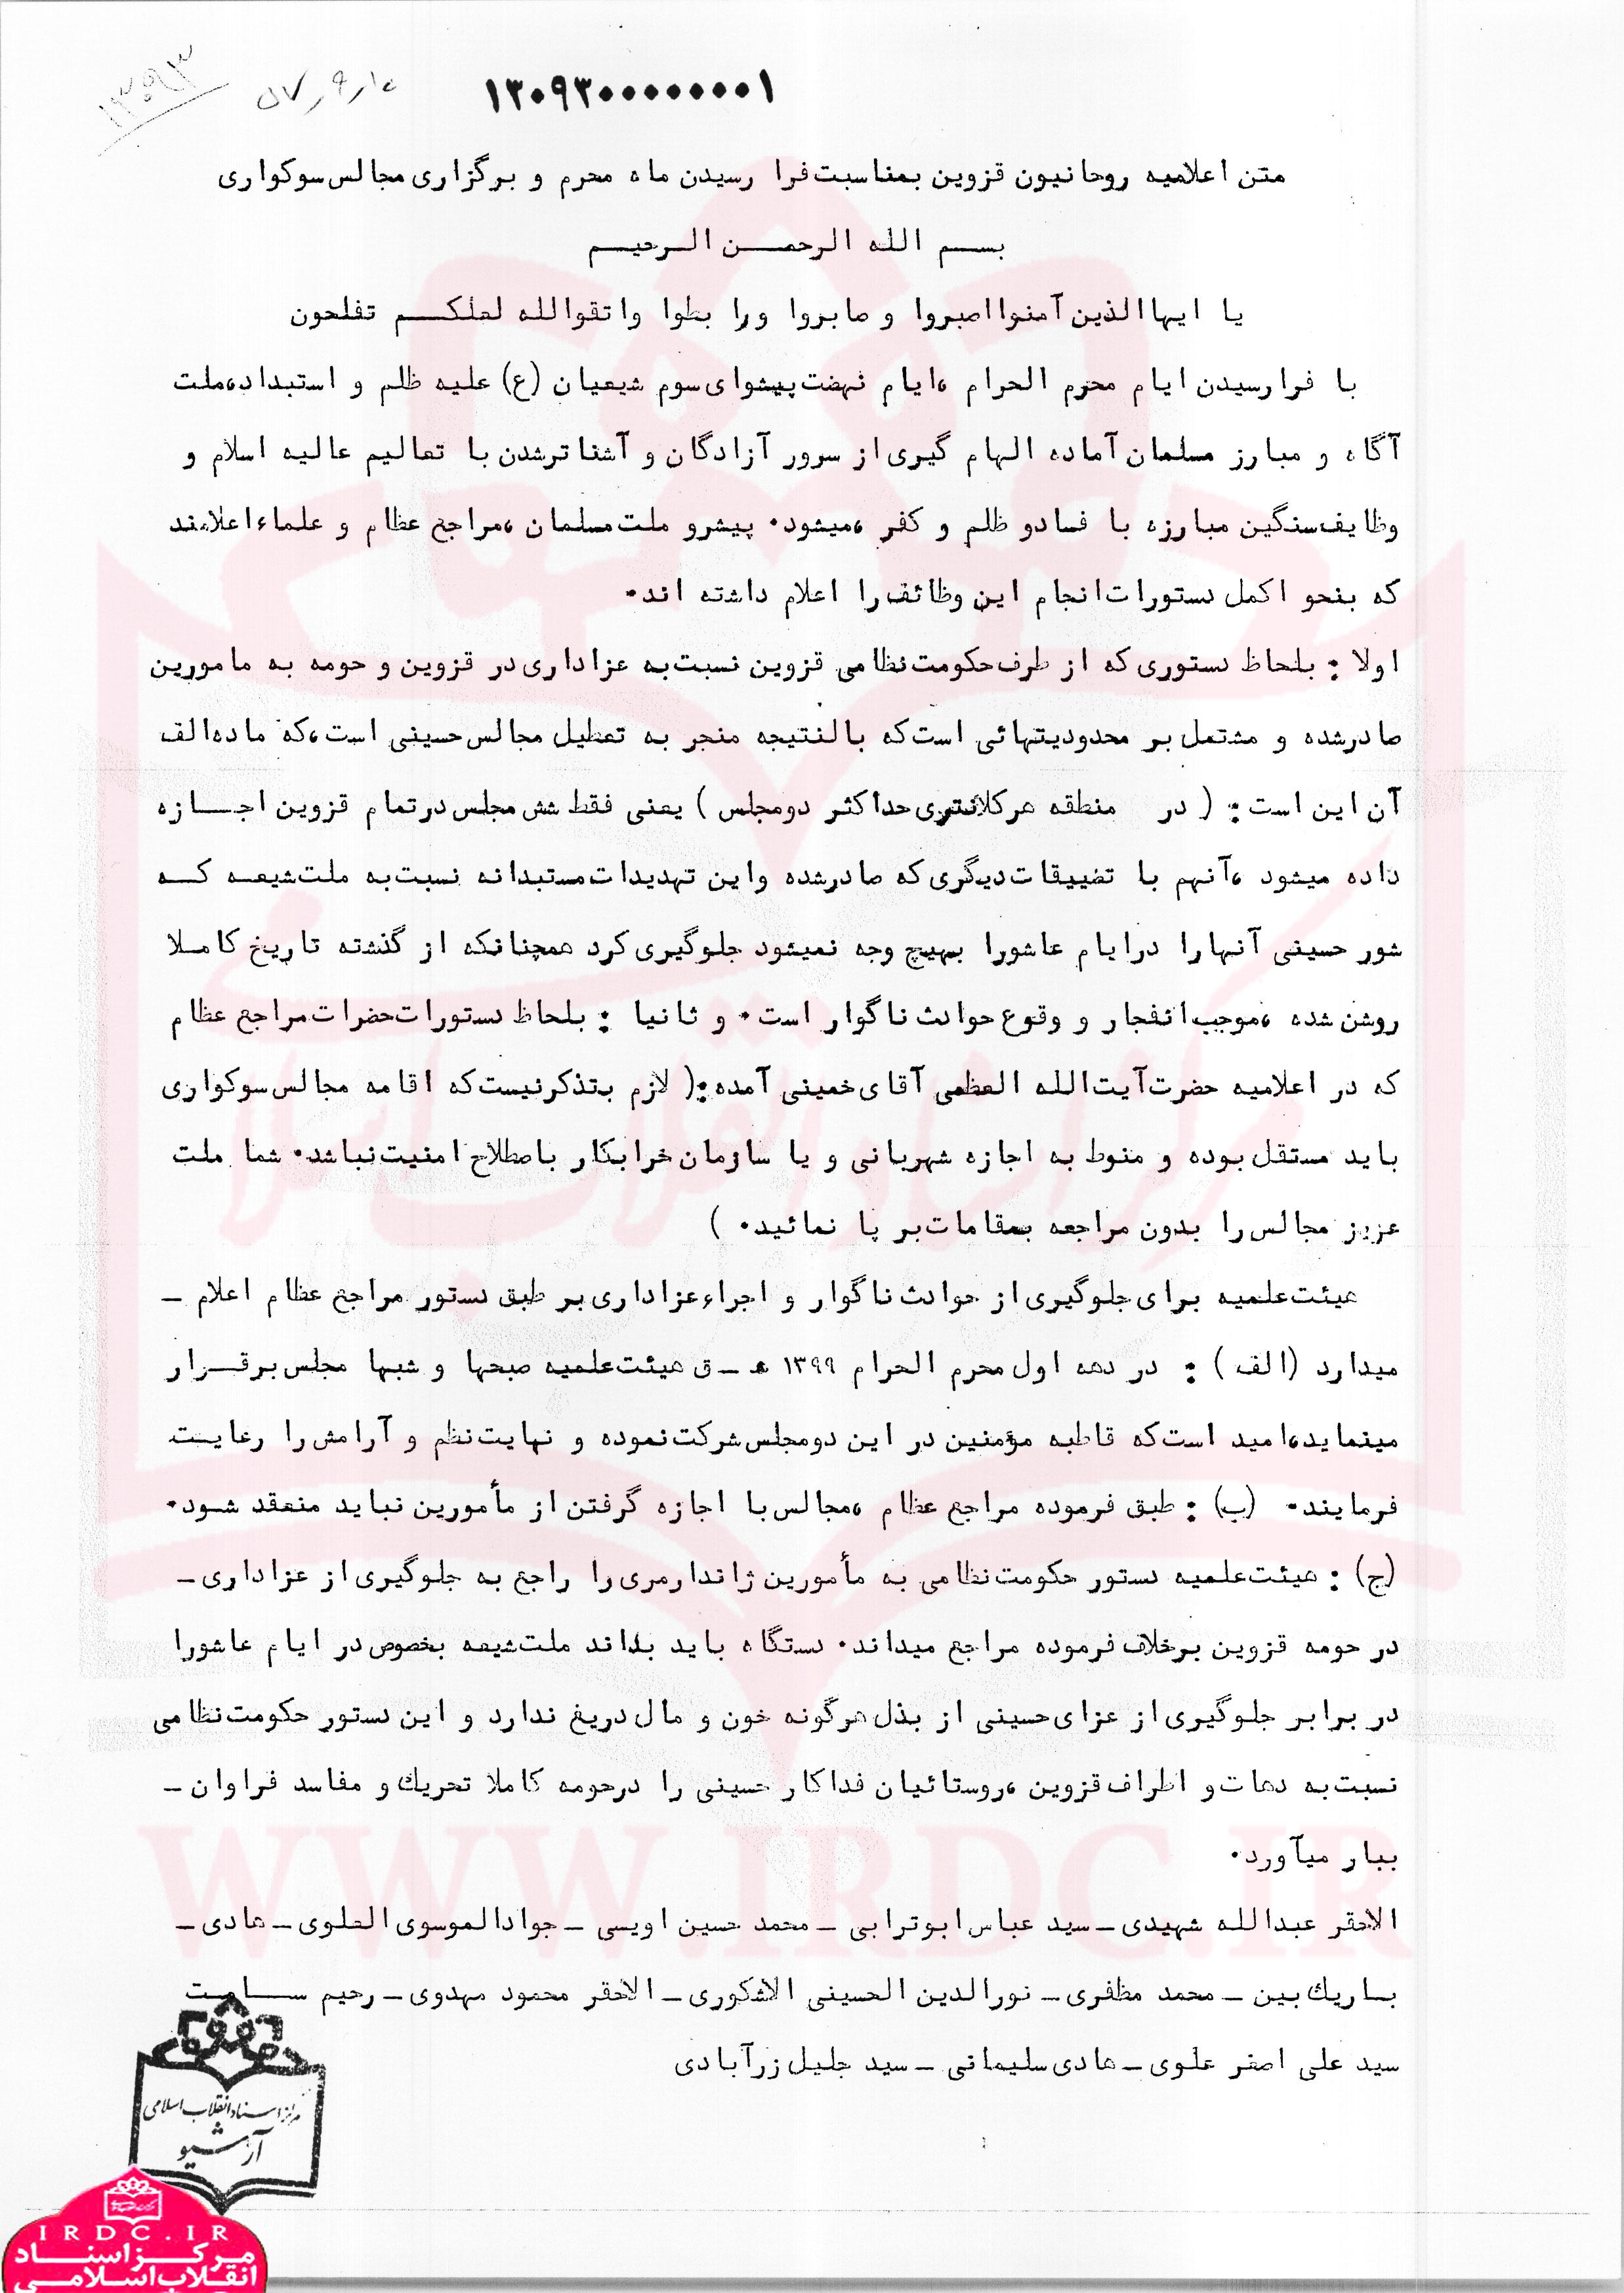 اعلامیه روحانیون قزوین در محرم سال 1357/ هشدار به رژیم پهلوی در صورت تعطیلی مجالس عزاداری